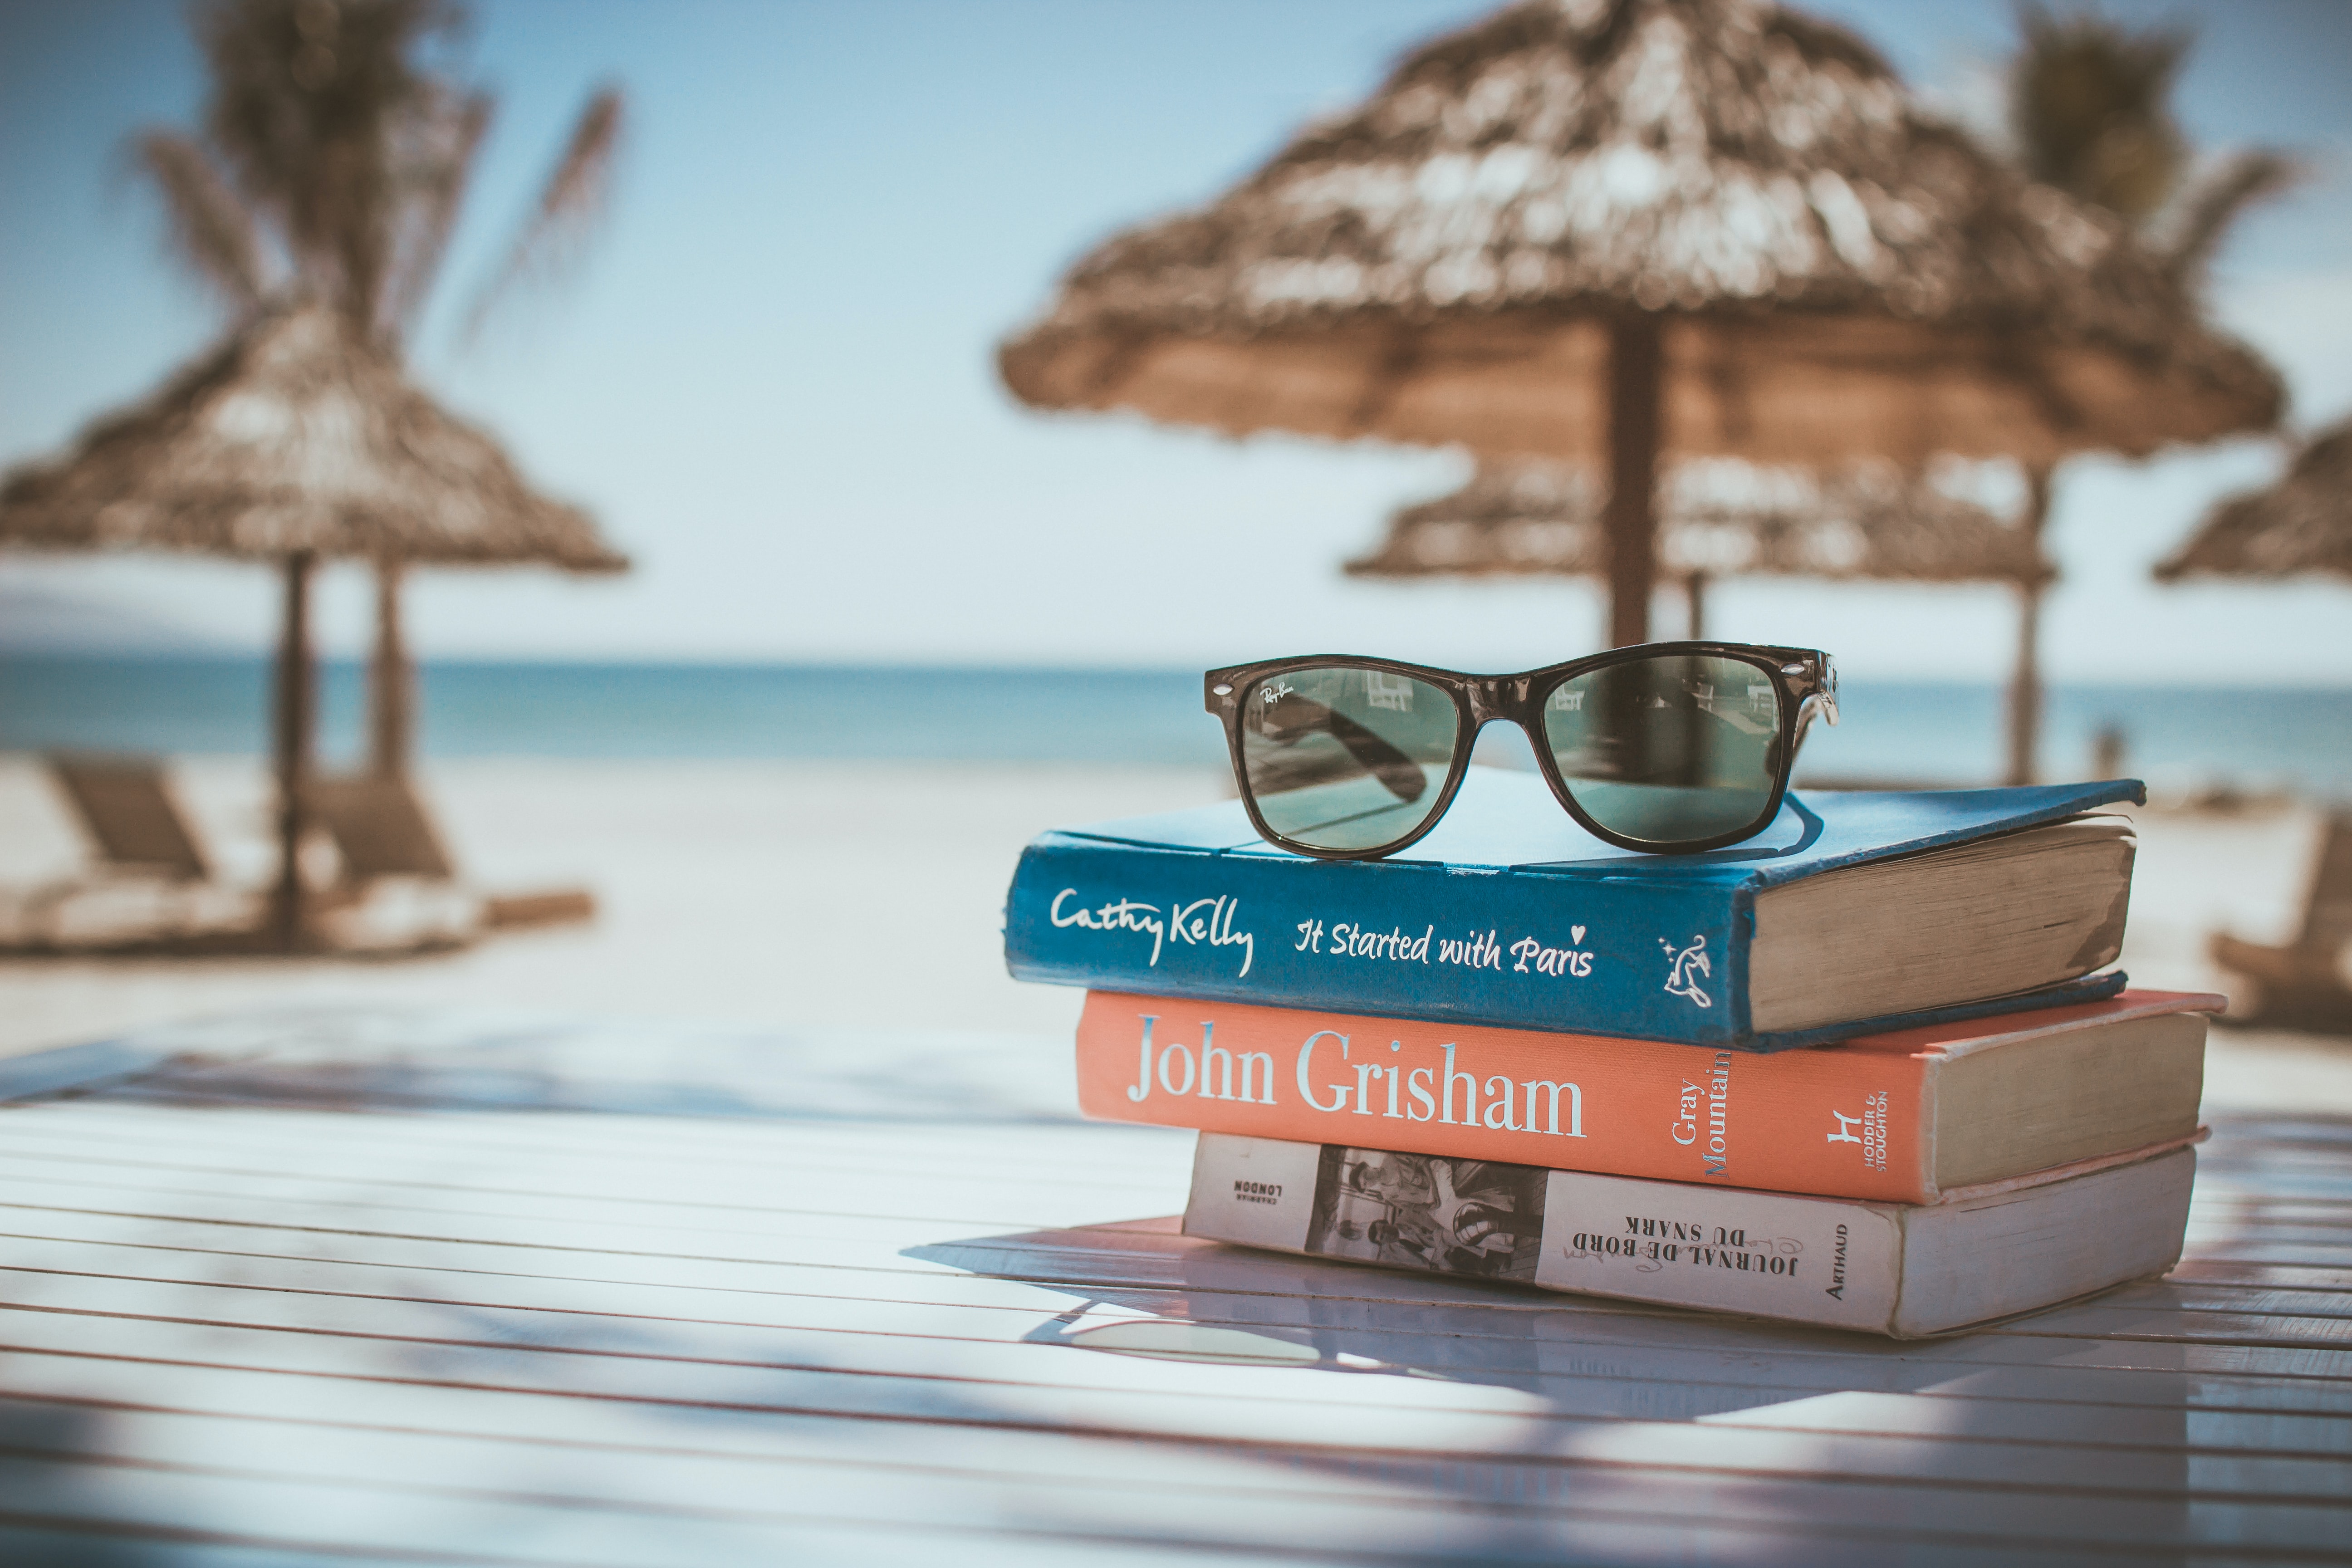 Fotografija sončnih očal na treh knjigah, v ozadju senčniki in plaža